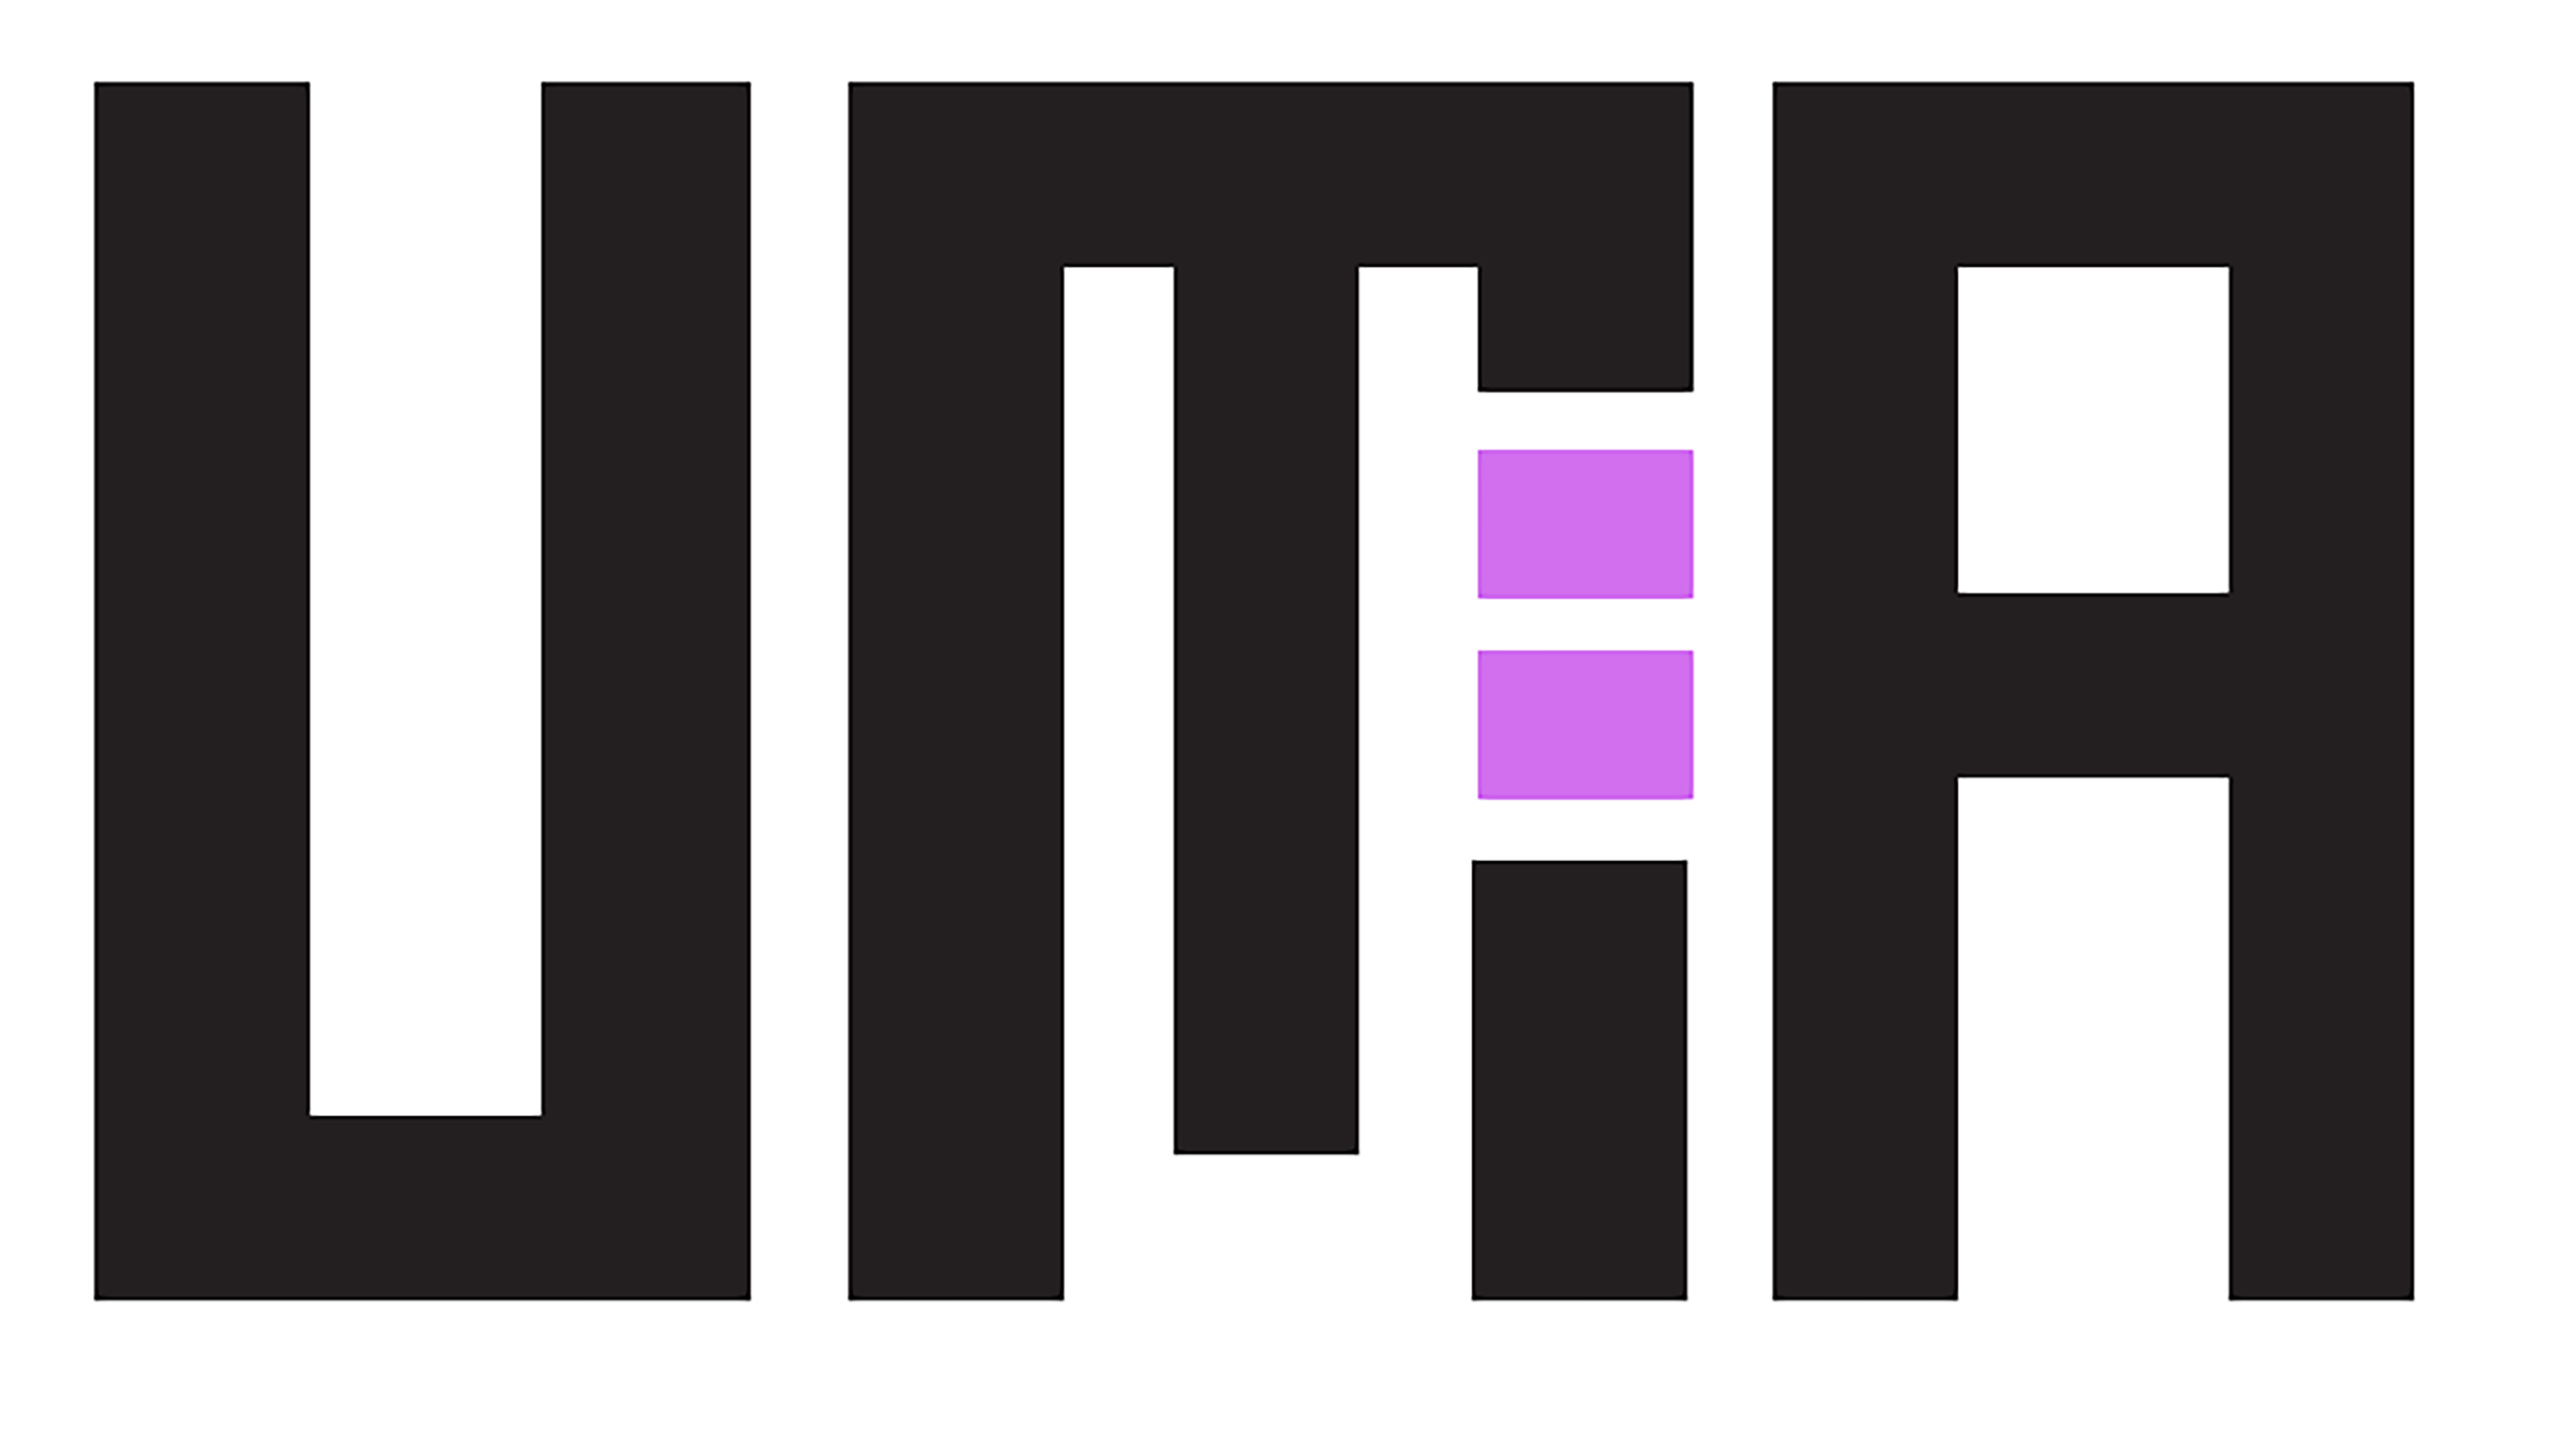 UMA Logo